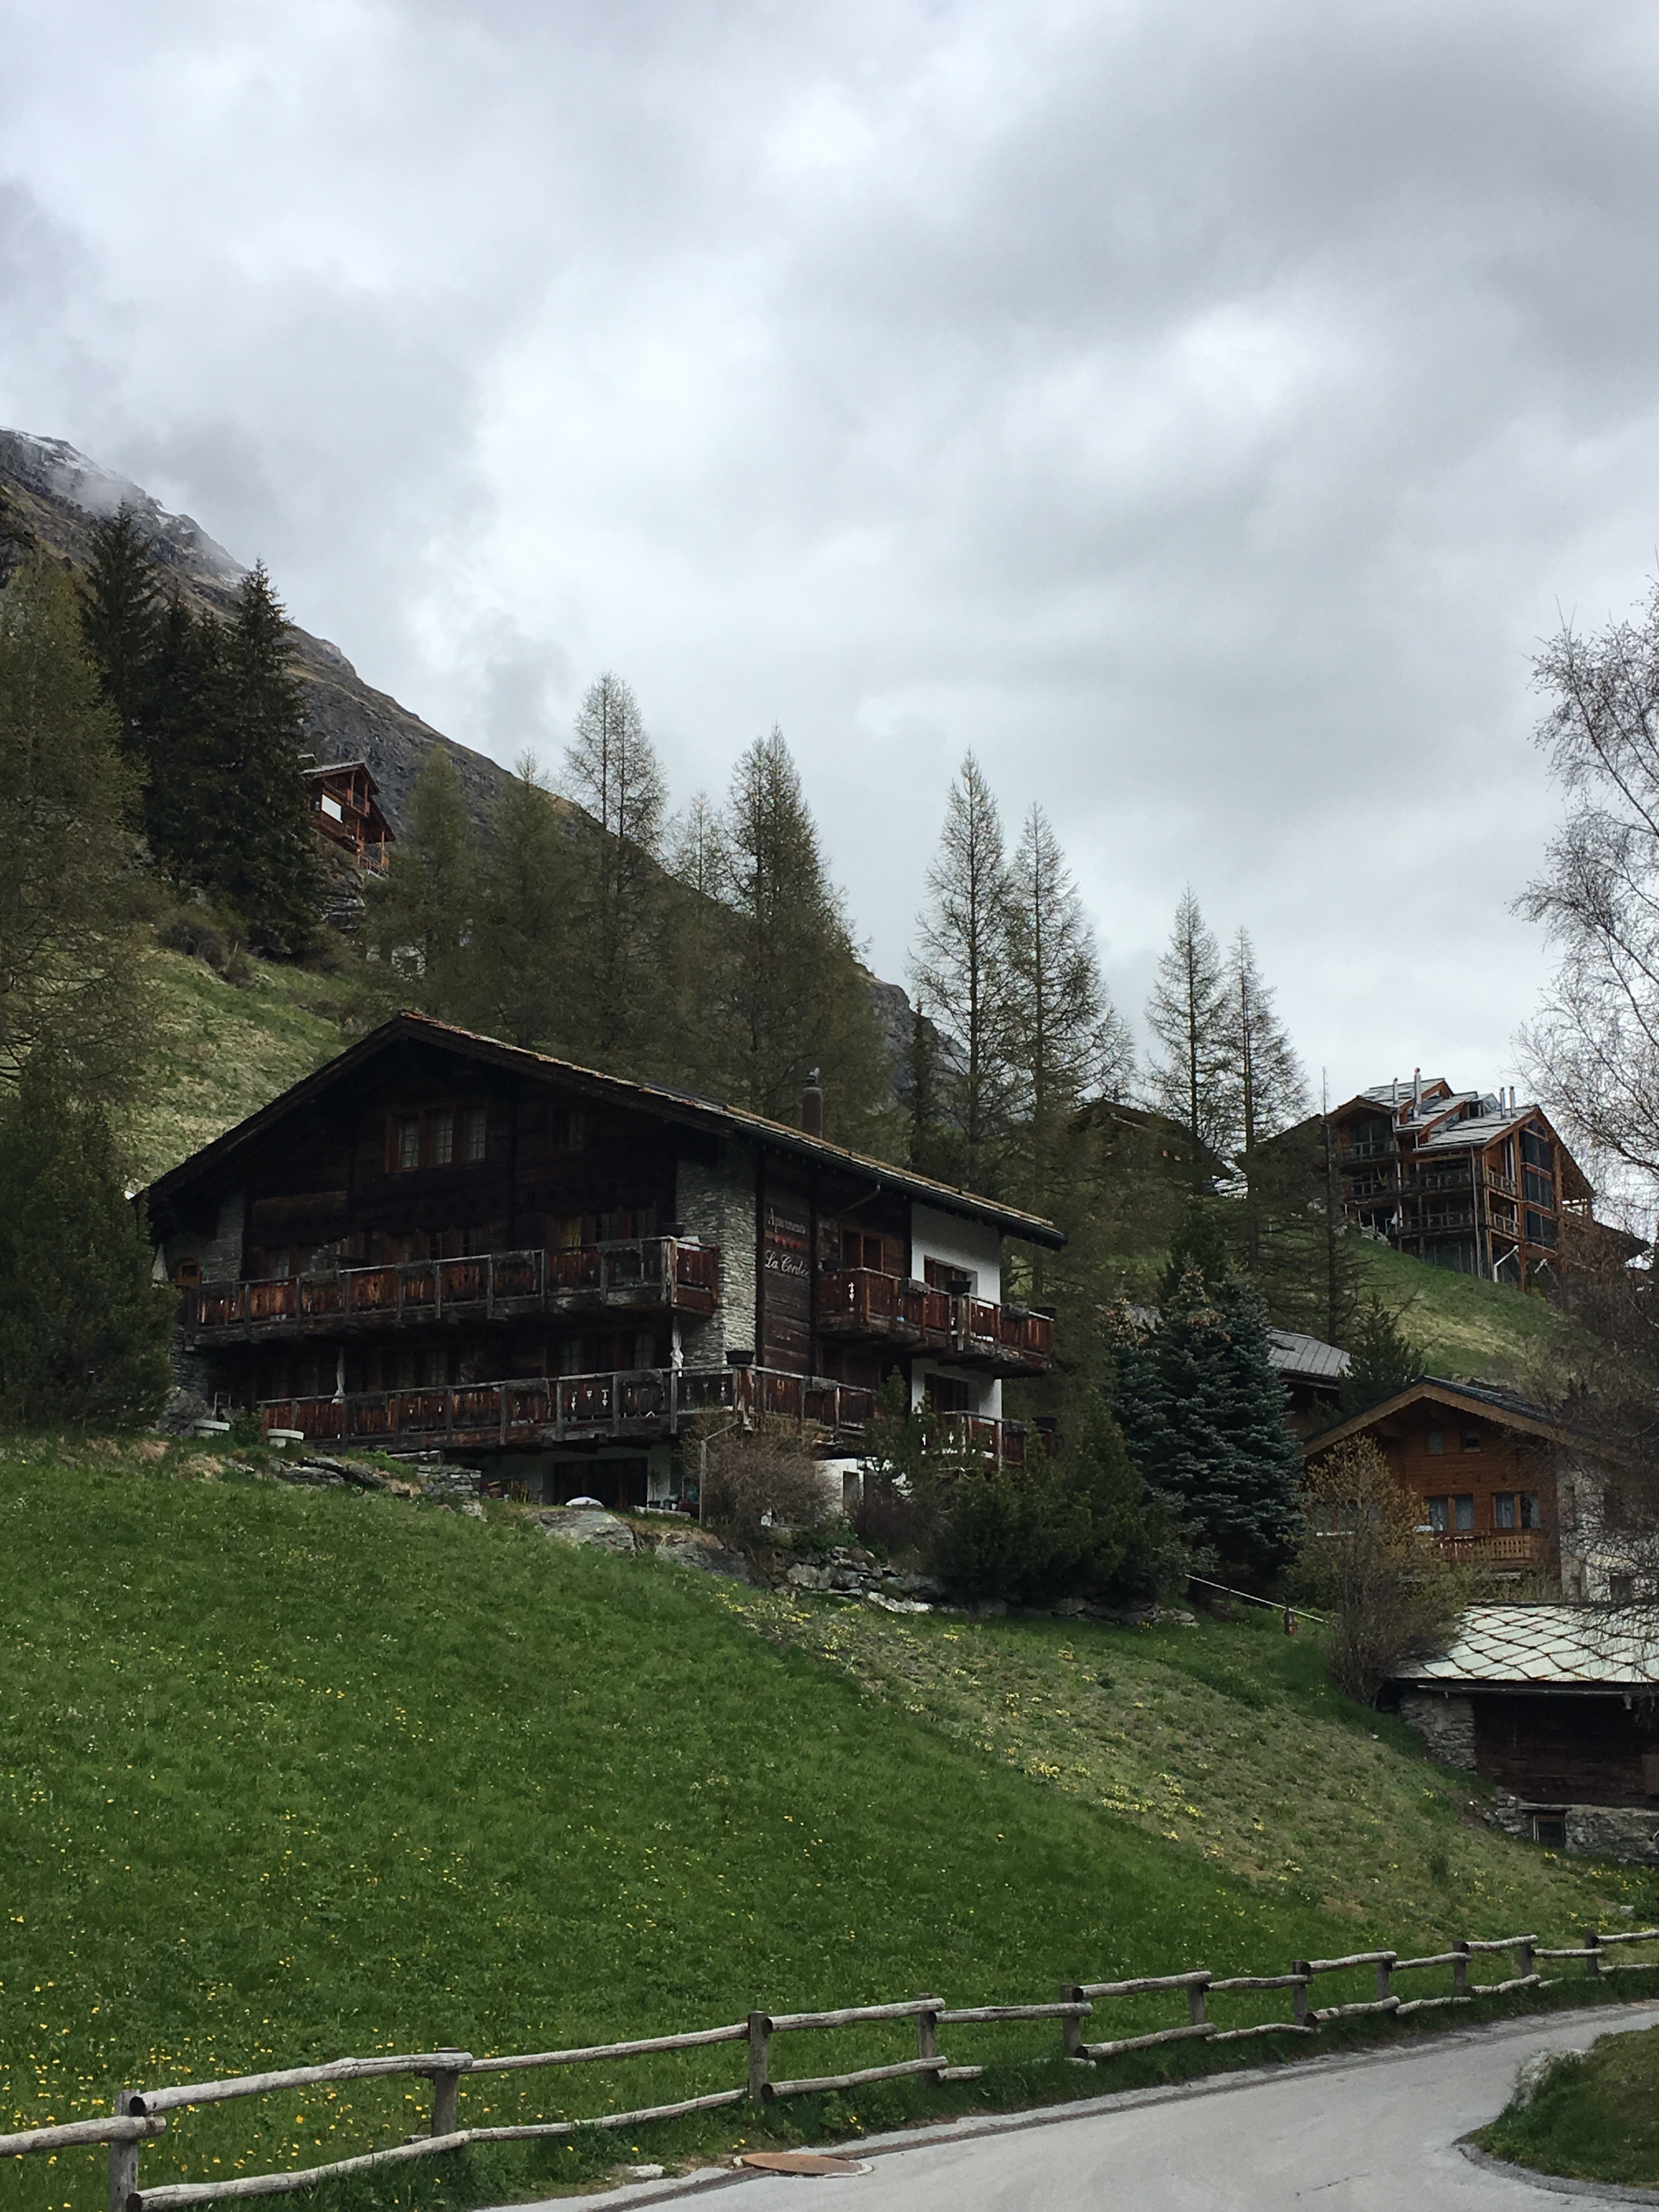 The surroundings of Zermatt, Switzerland. Brownell, May, 2019